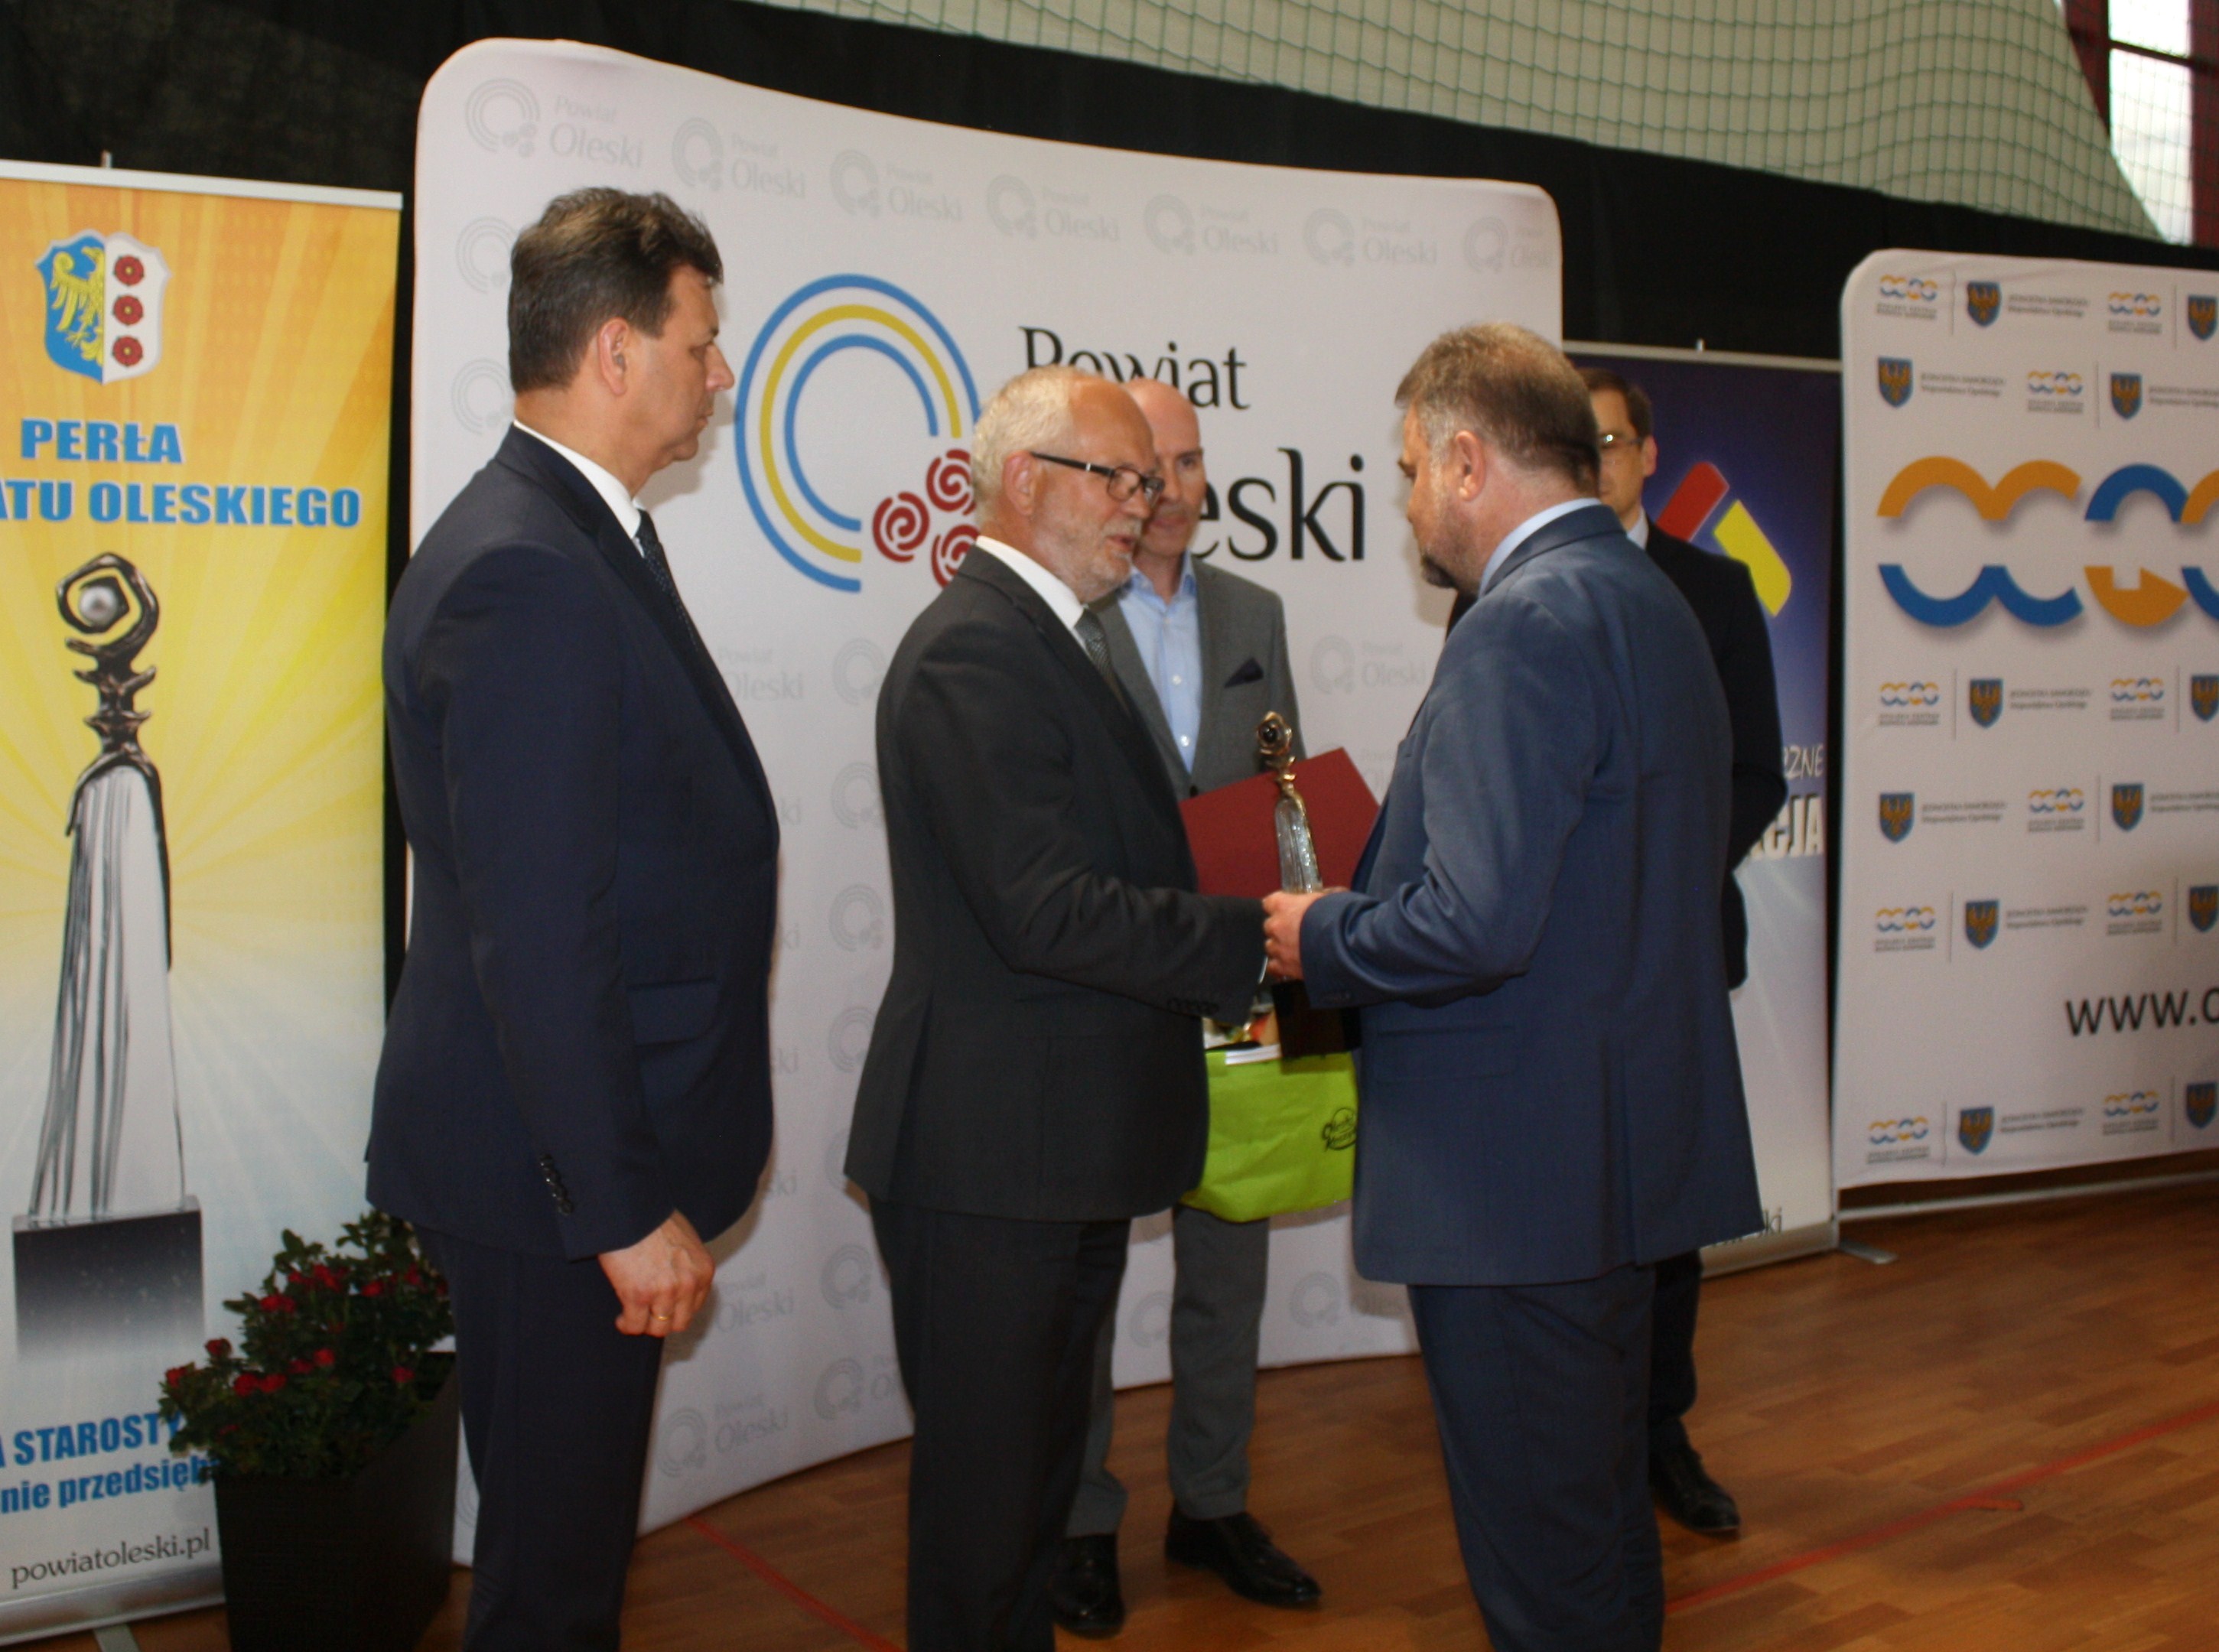 Nagrodę specjalną Starosty Oleskiego - Czarną Perłę Powiatu Oleskiego - w tym roku otrzymał pan Artur Kniejski